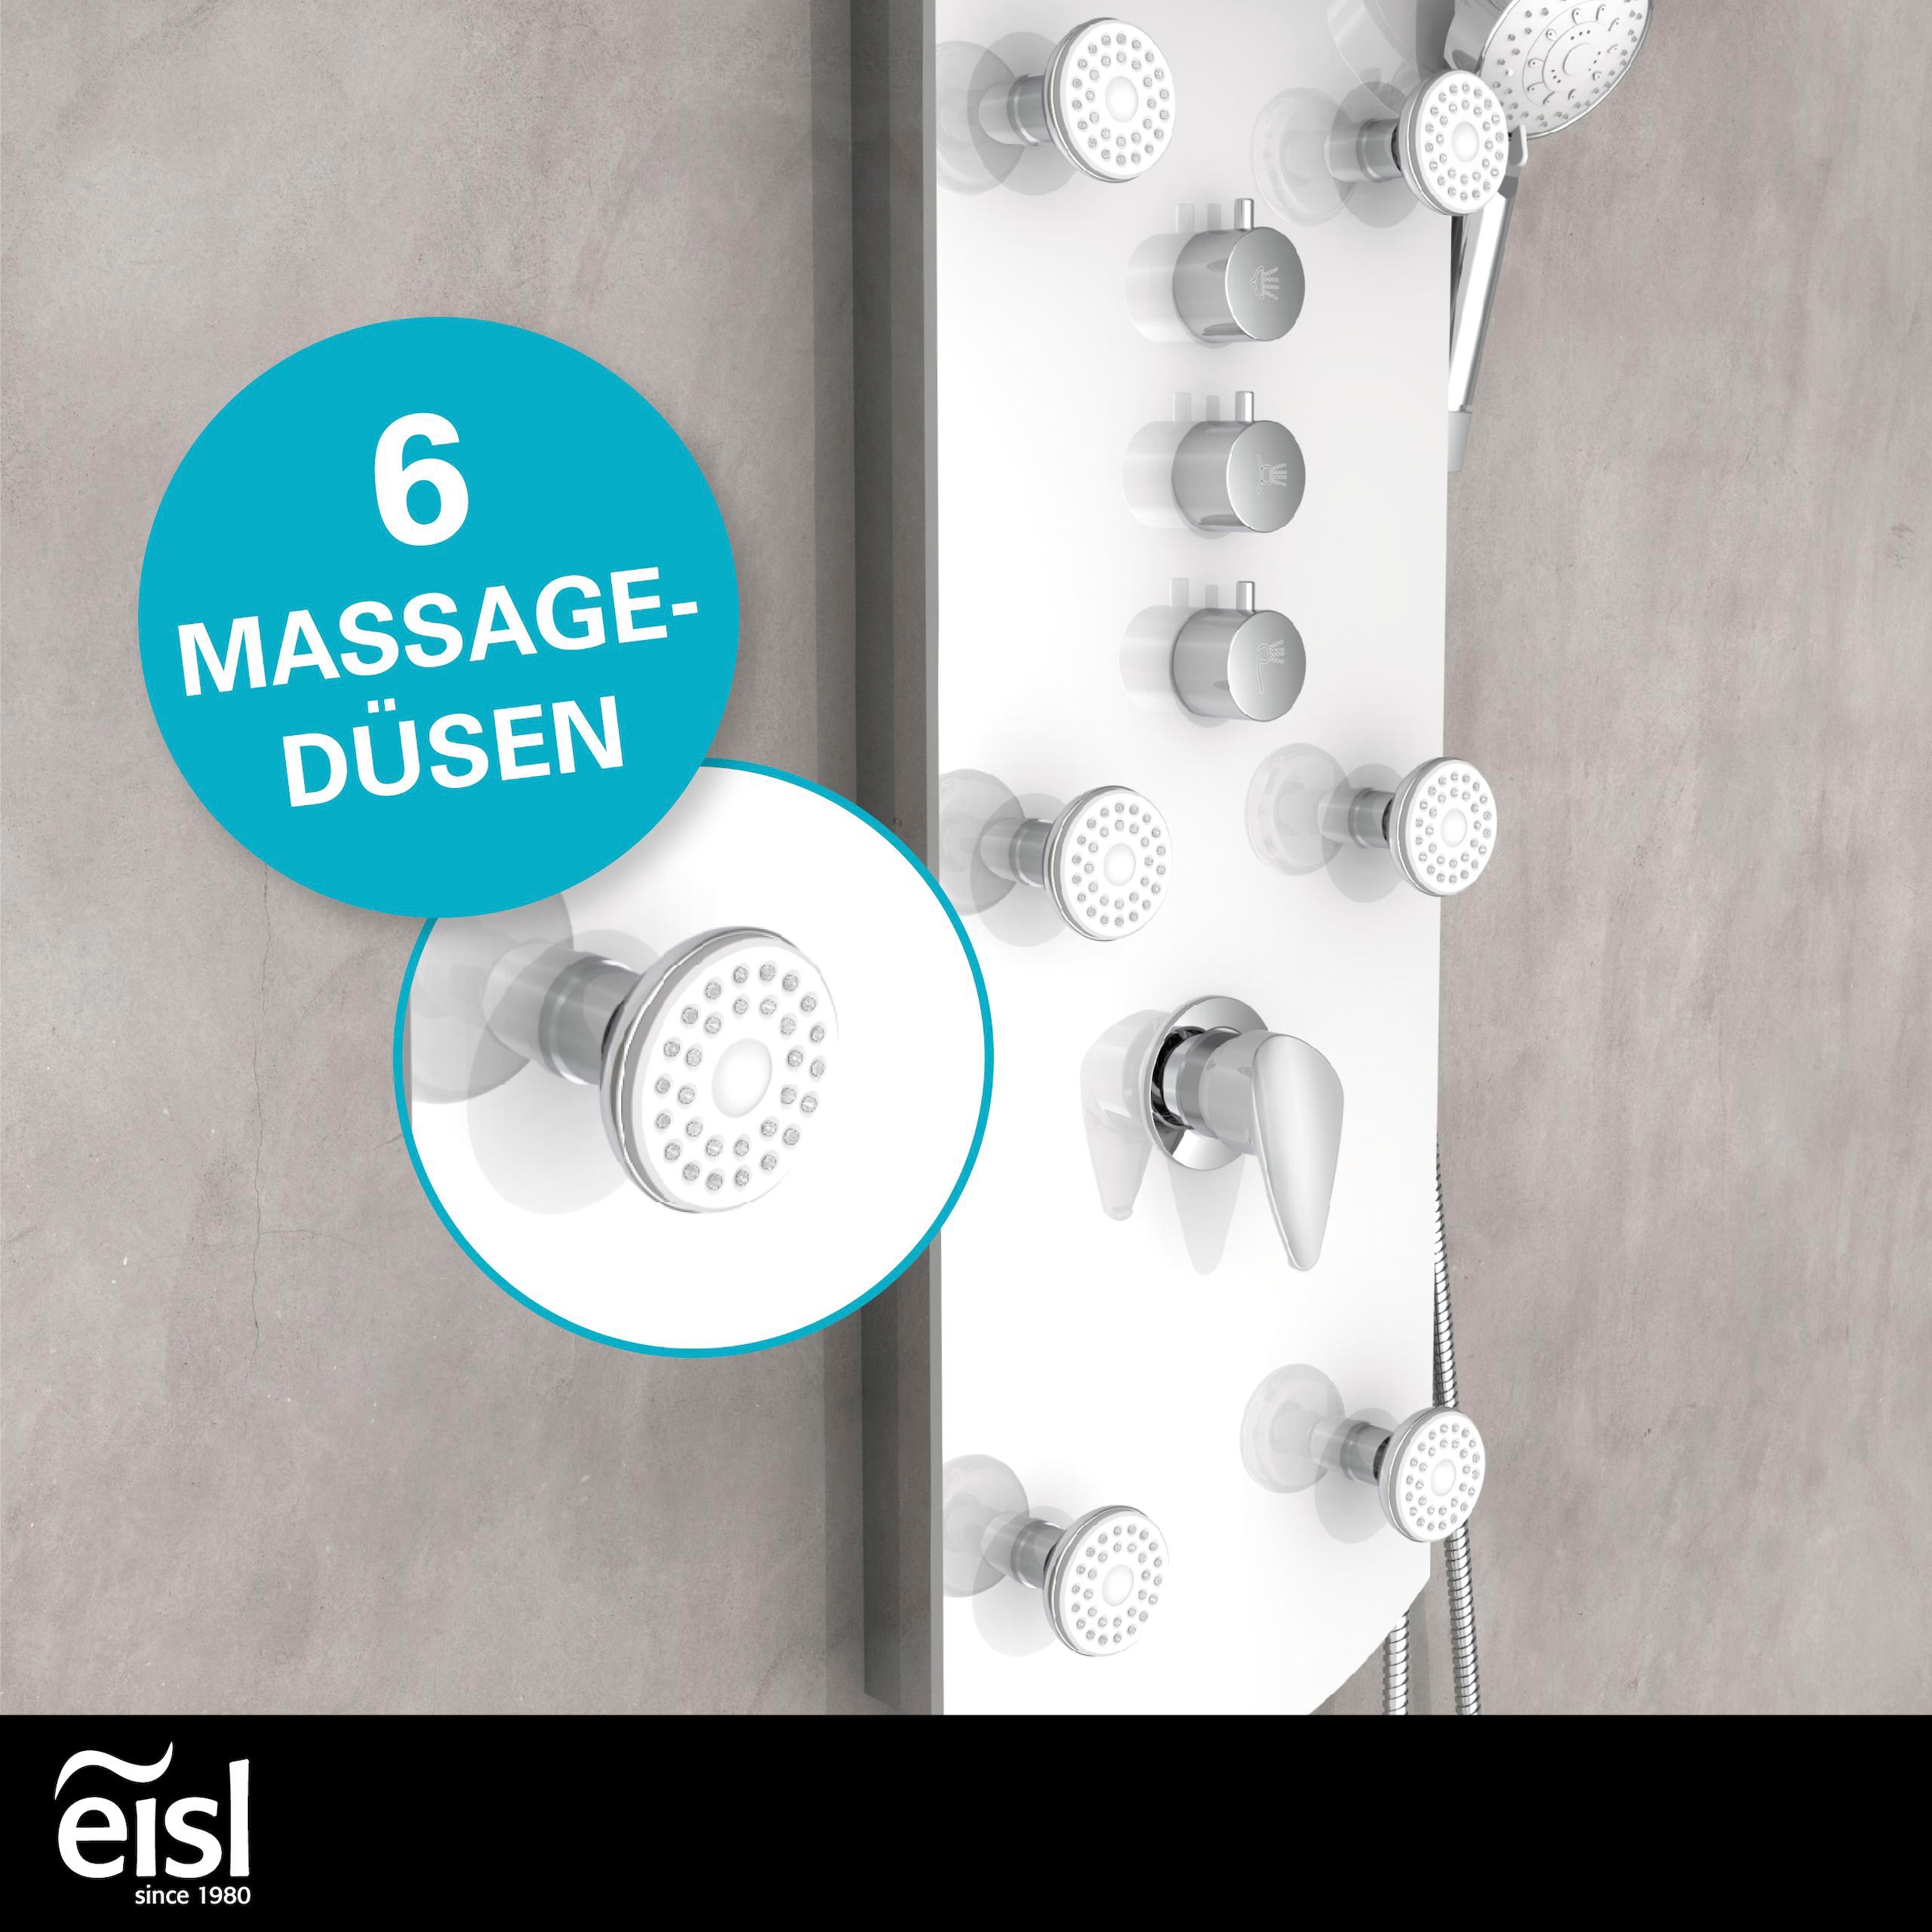 Eisl Duschsäule »KARIBIK«, 6 Massagedüsen, Wellness Duschsystem mit Armatur und Regendusche